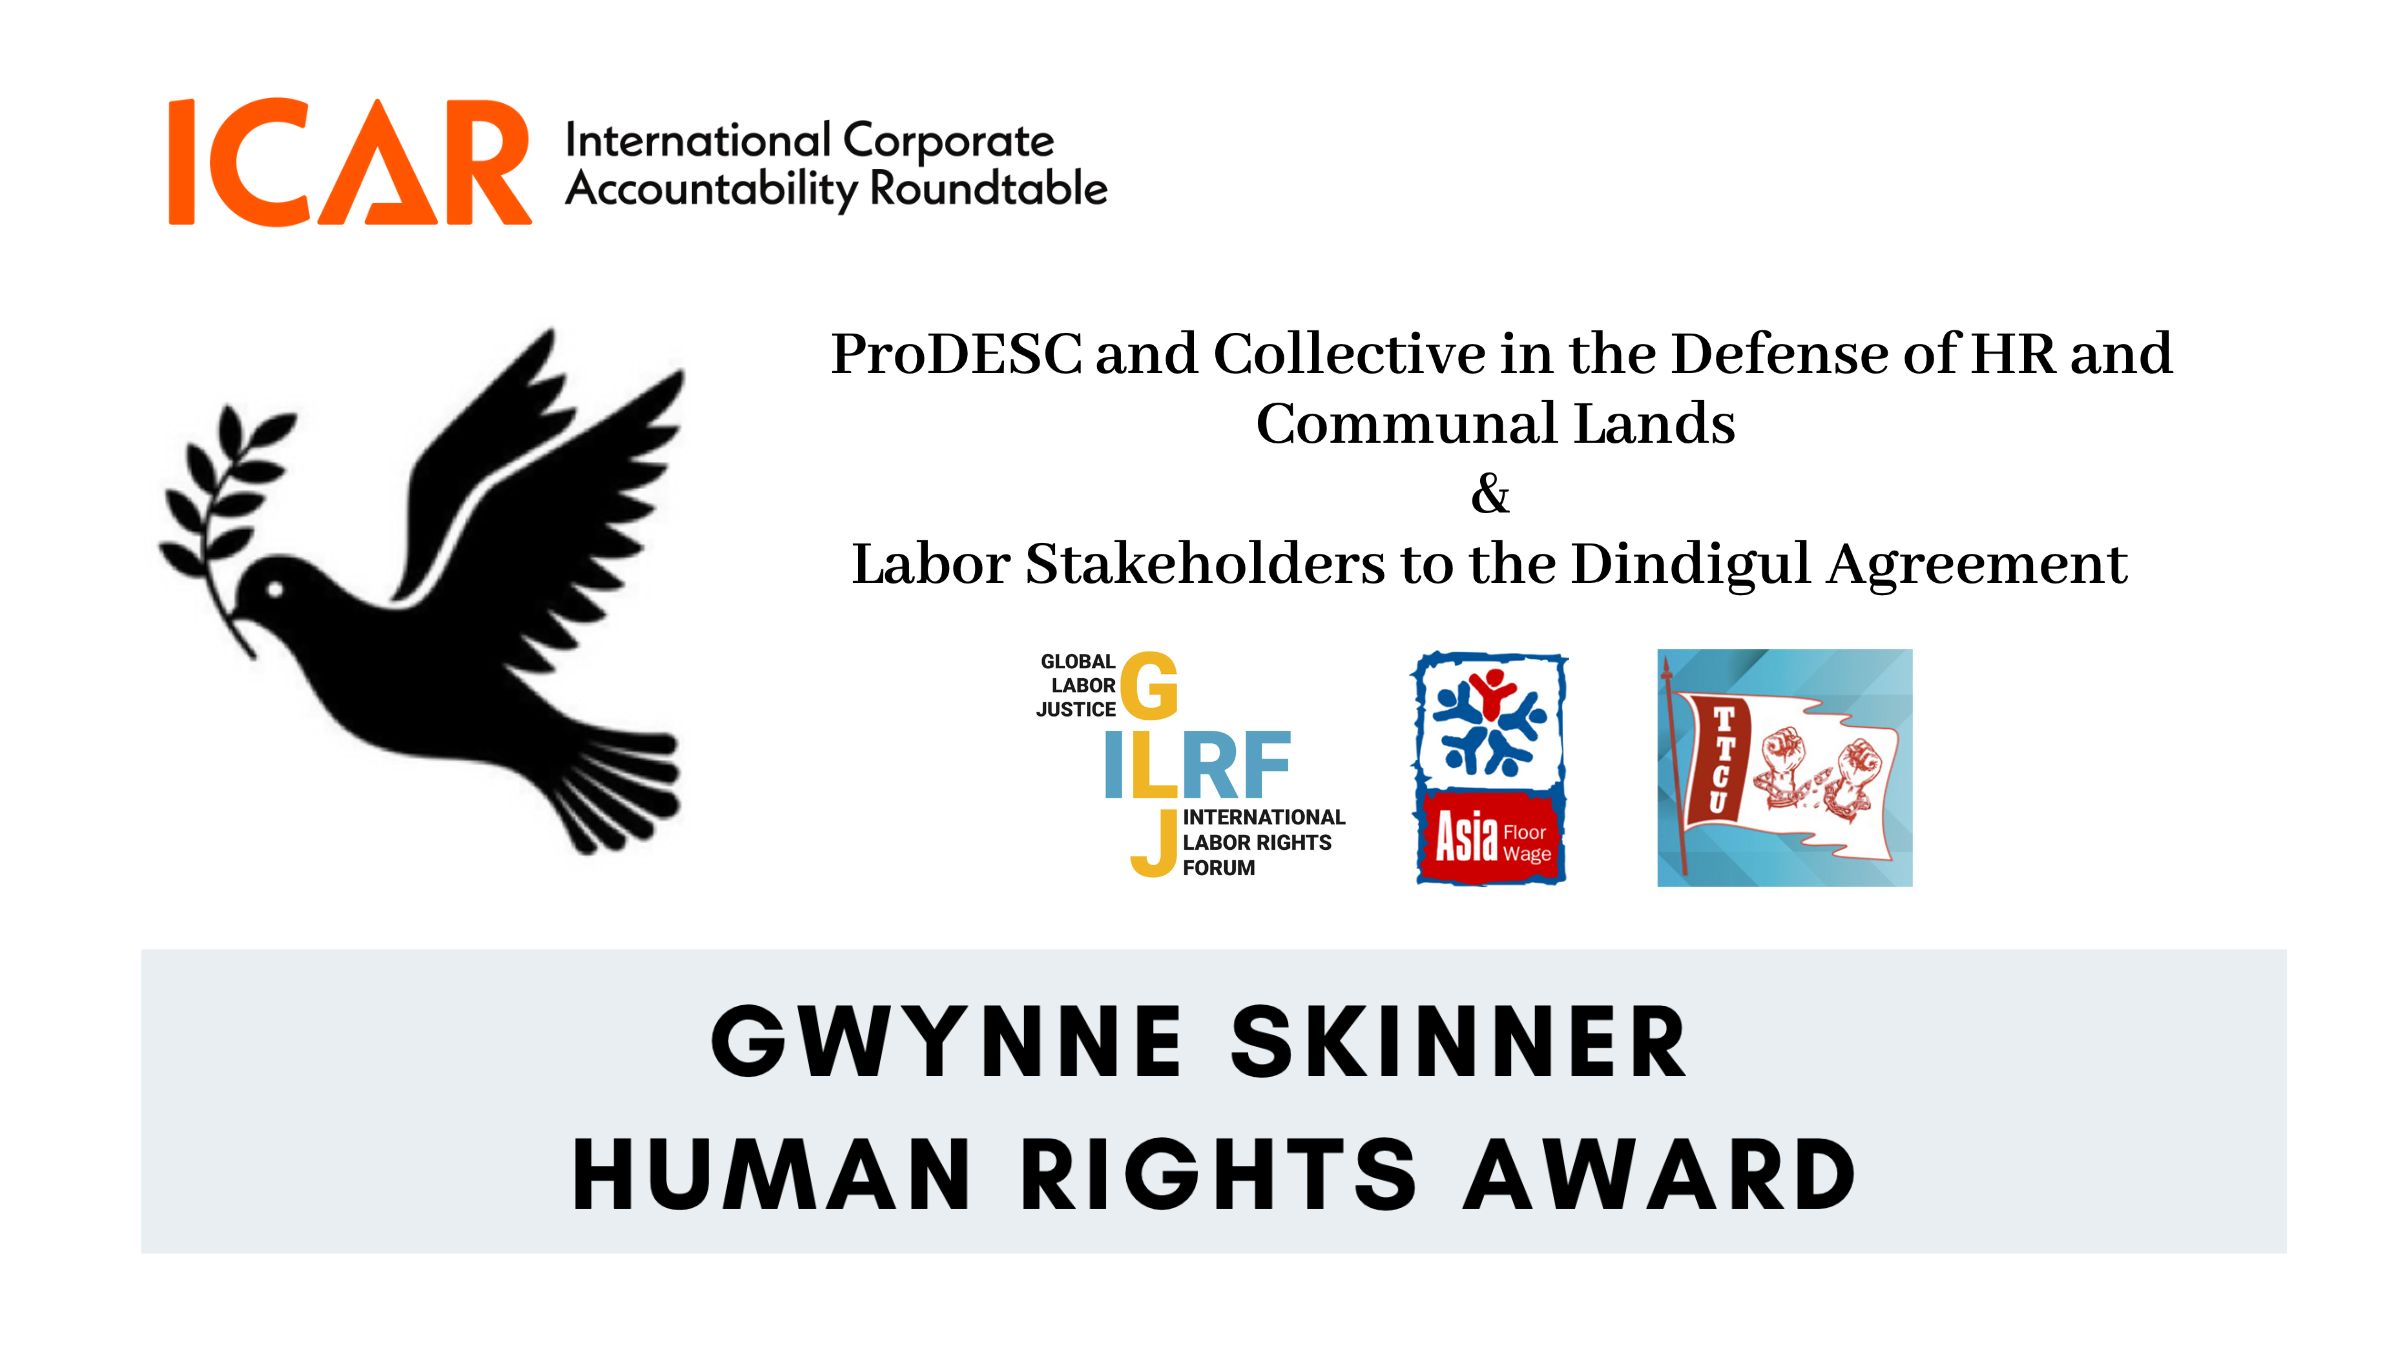 AFWA Receives ICAR 2022 Gwynne Skinner Human Rights Award